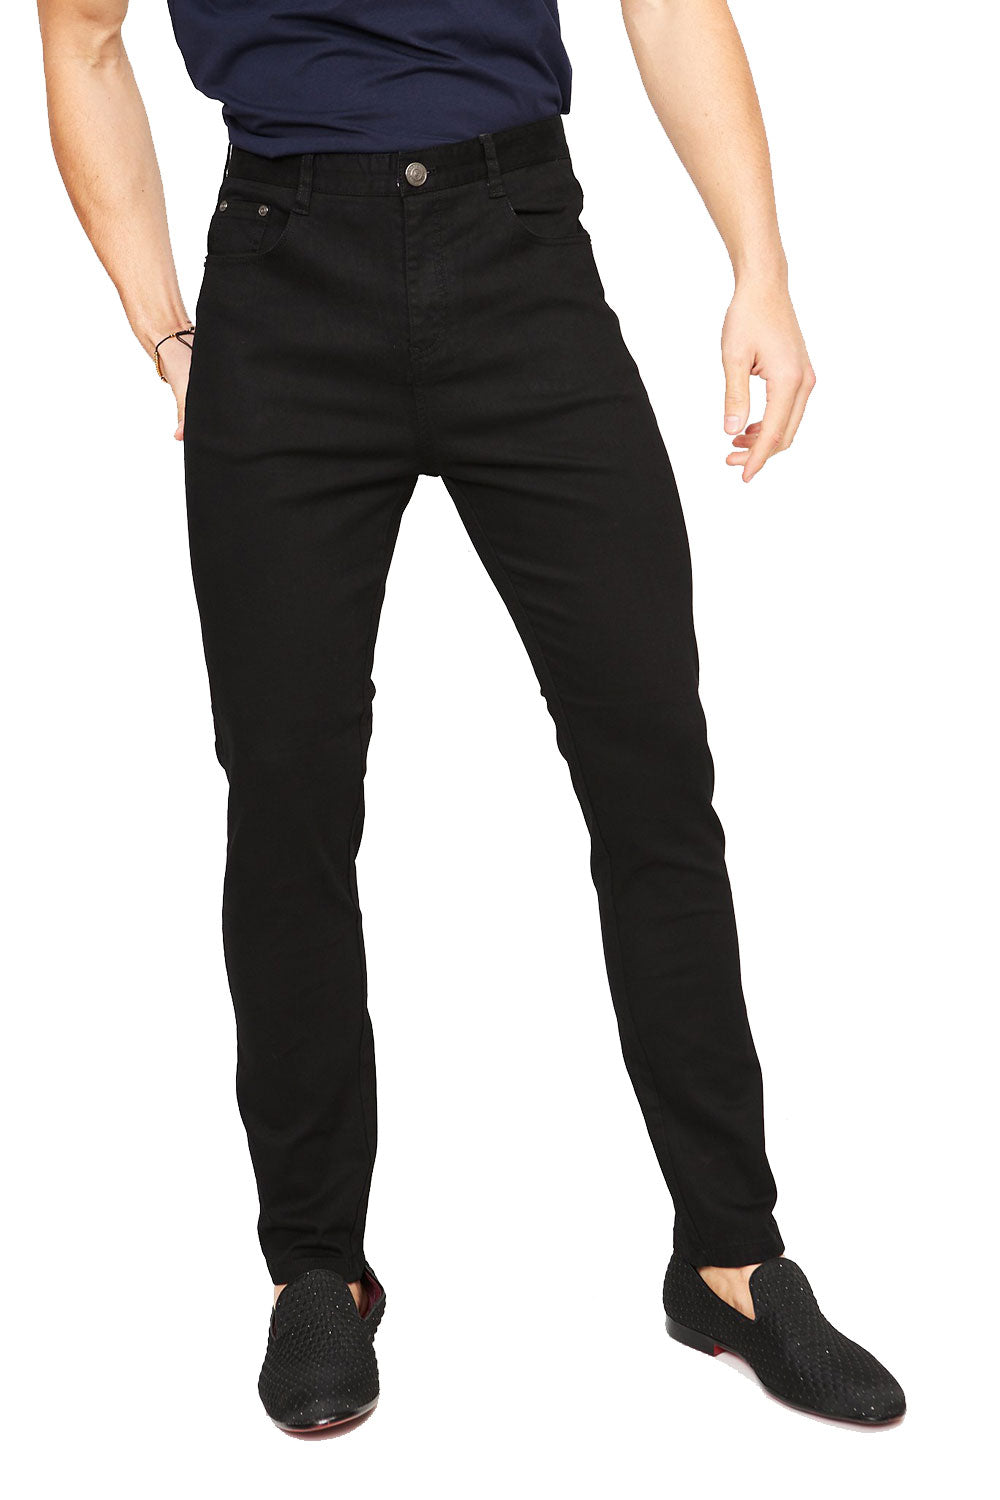 BARABAS Men's solid color Black skinny jeans Pants B2076